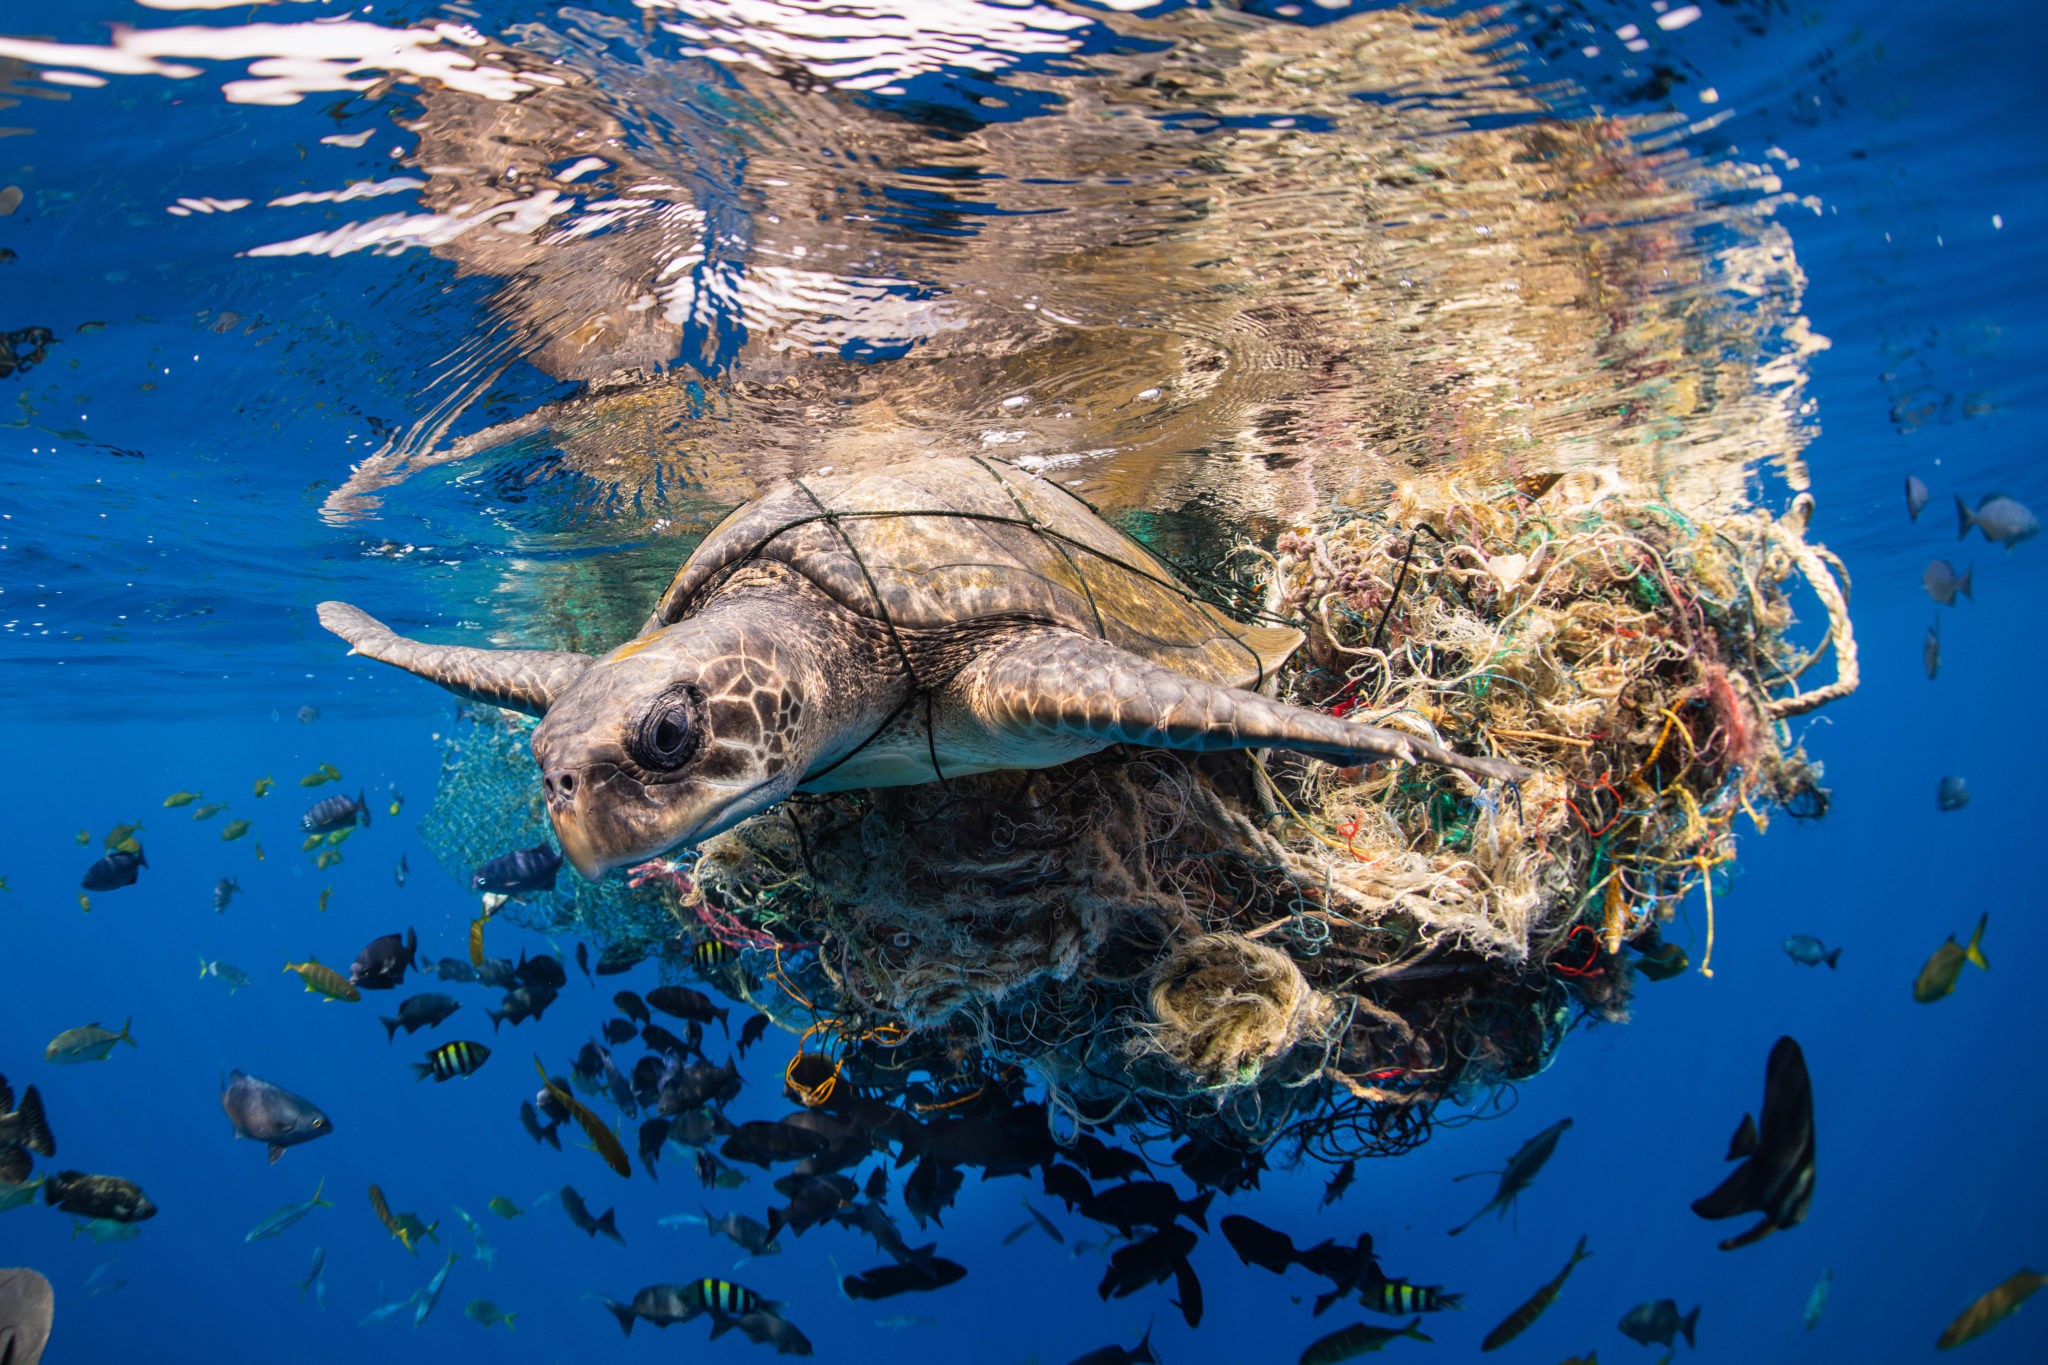  O grande ganhador foi o fotógrafo alemão Simon Lorenz que fotografou uma tartaruga-oliva presa em uma rede (Foto:  Simon Lorenz --  Prêmio Ocean Photographer of the Year )